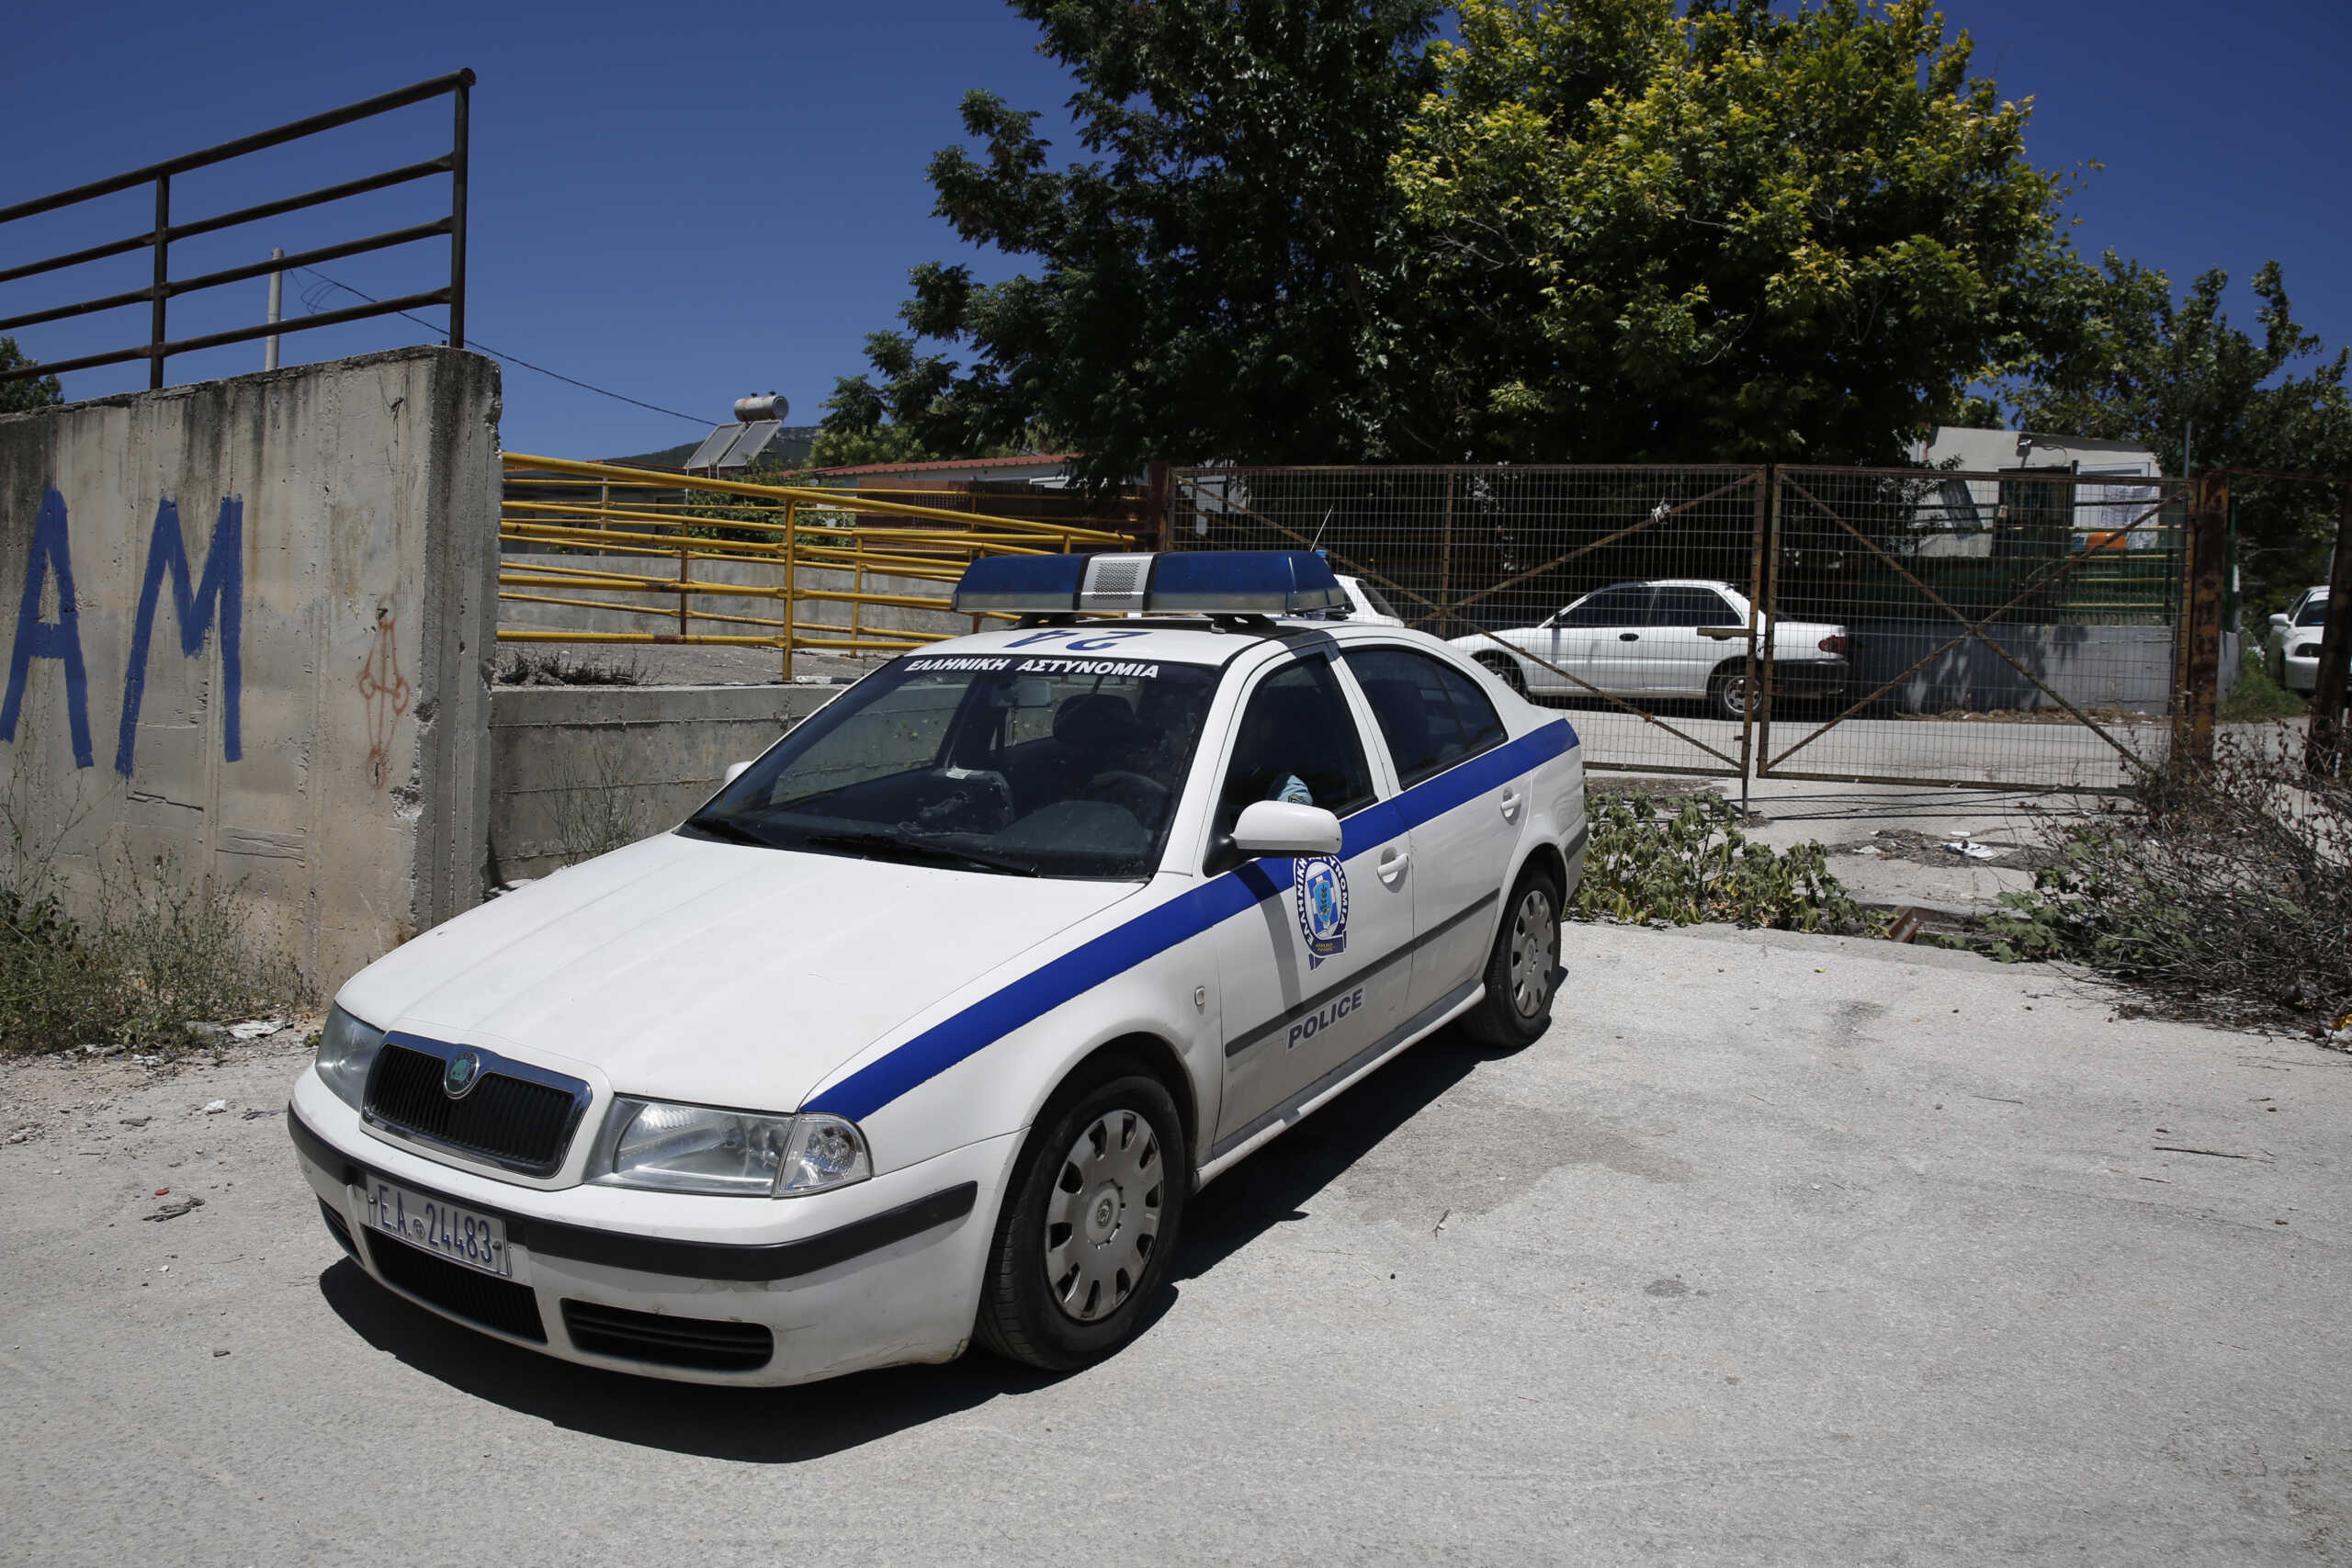 Θεσσαλονίκη: Πυροβολισμοί μέσα από αυτοκίνητο σε καταυλισμό Ρομά στα Διαβατά με έναν τραυματία